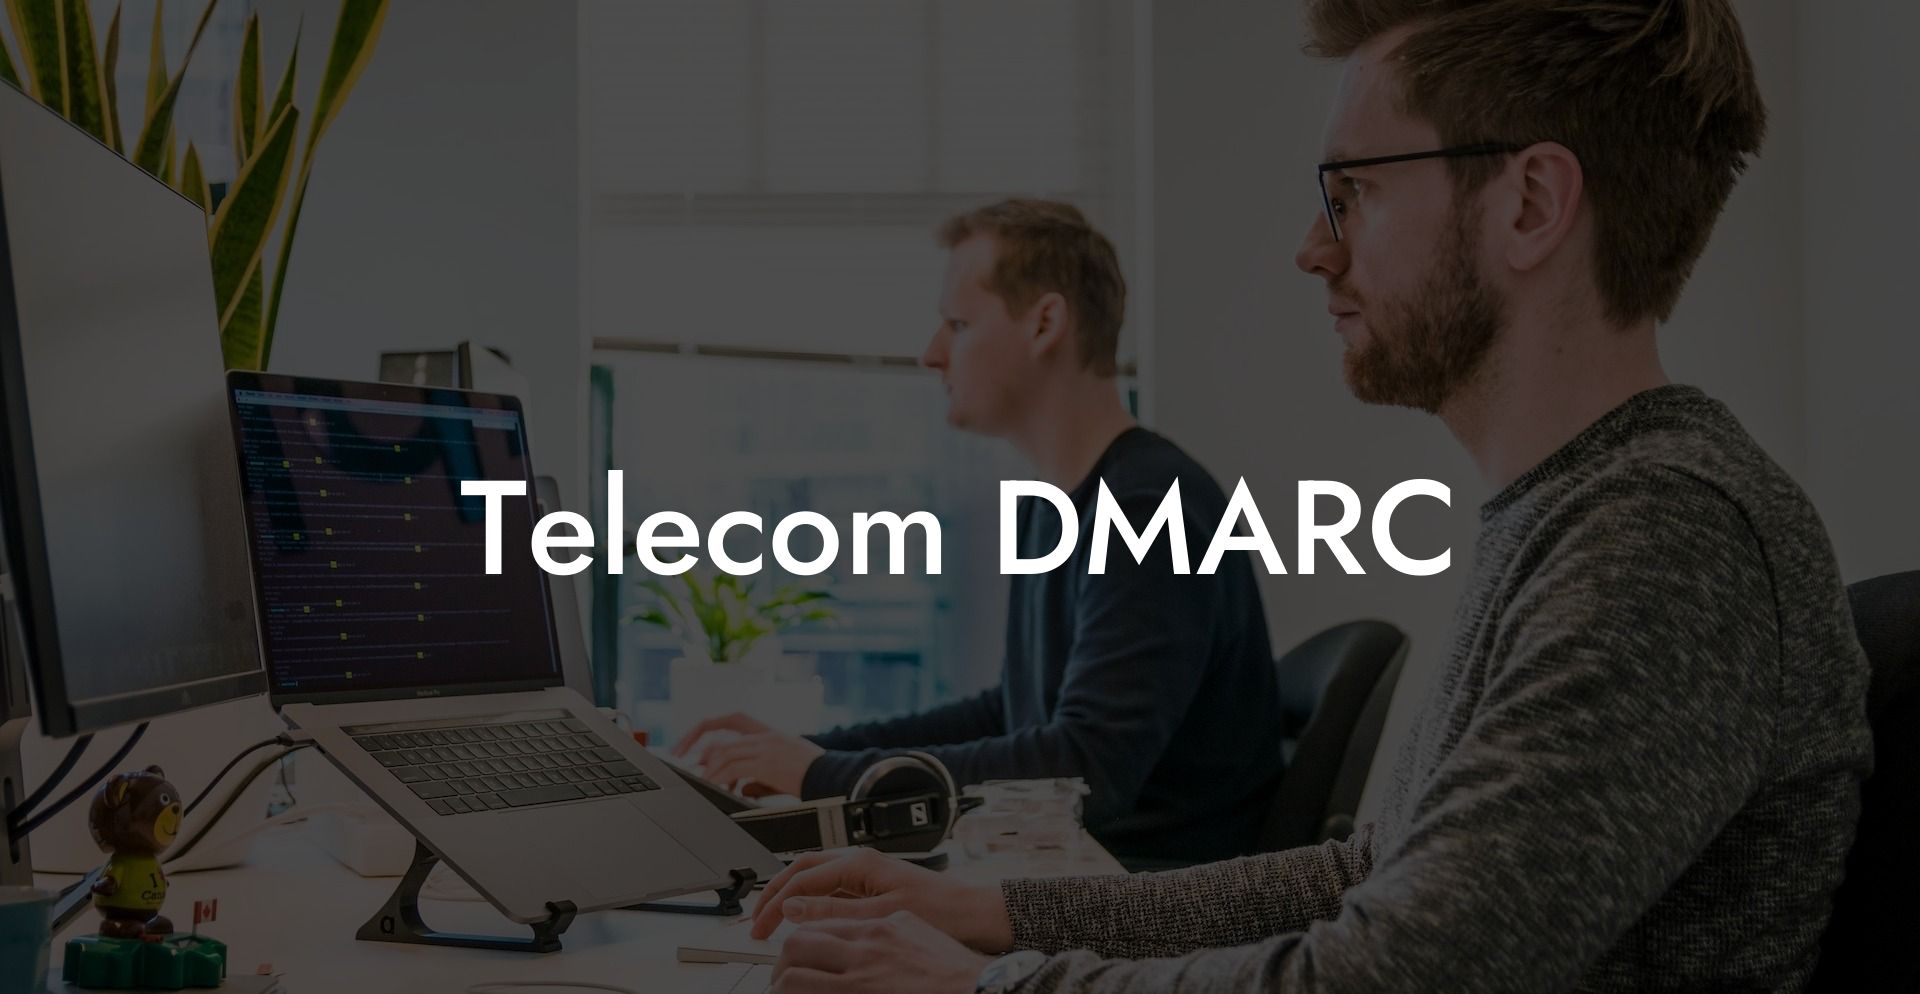 Telecom DMARC